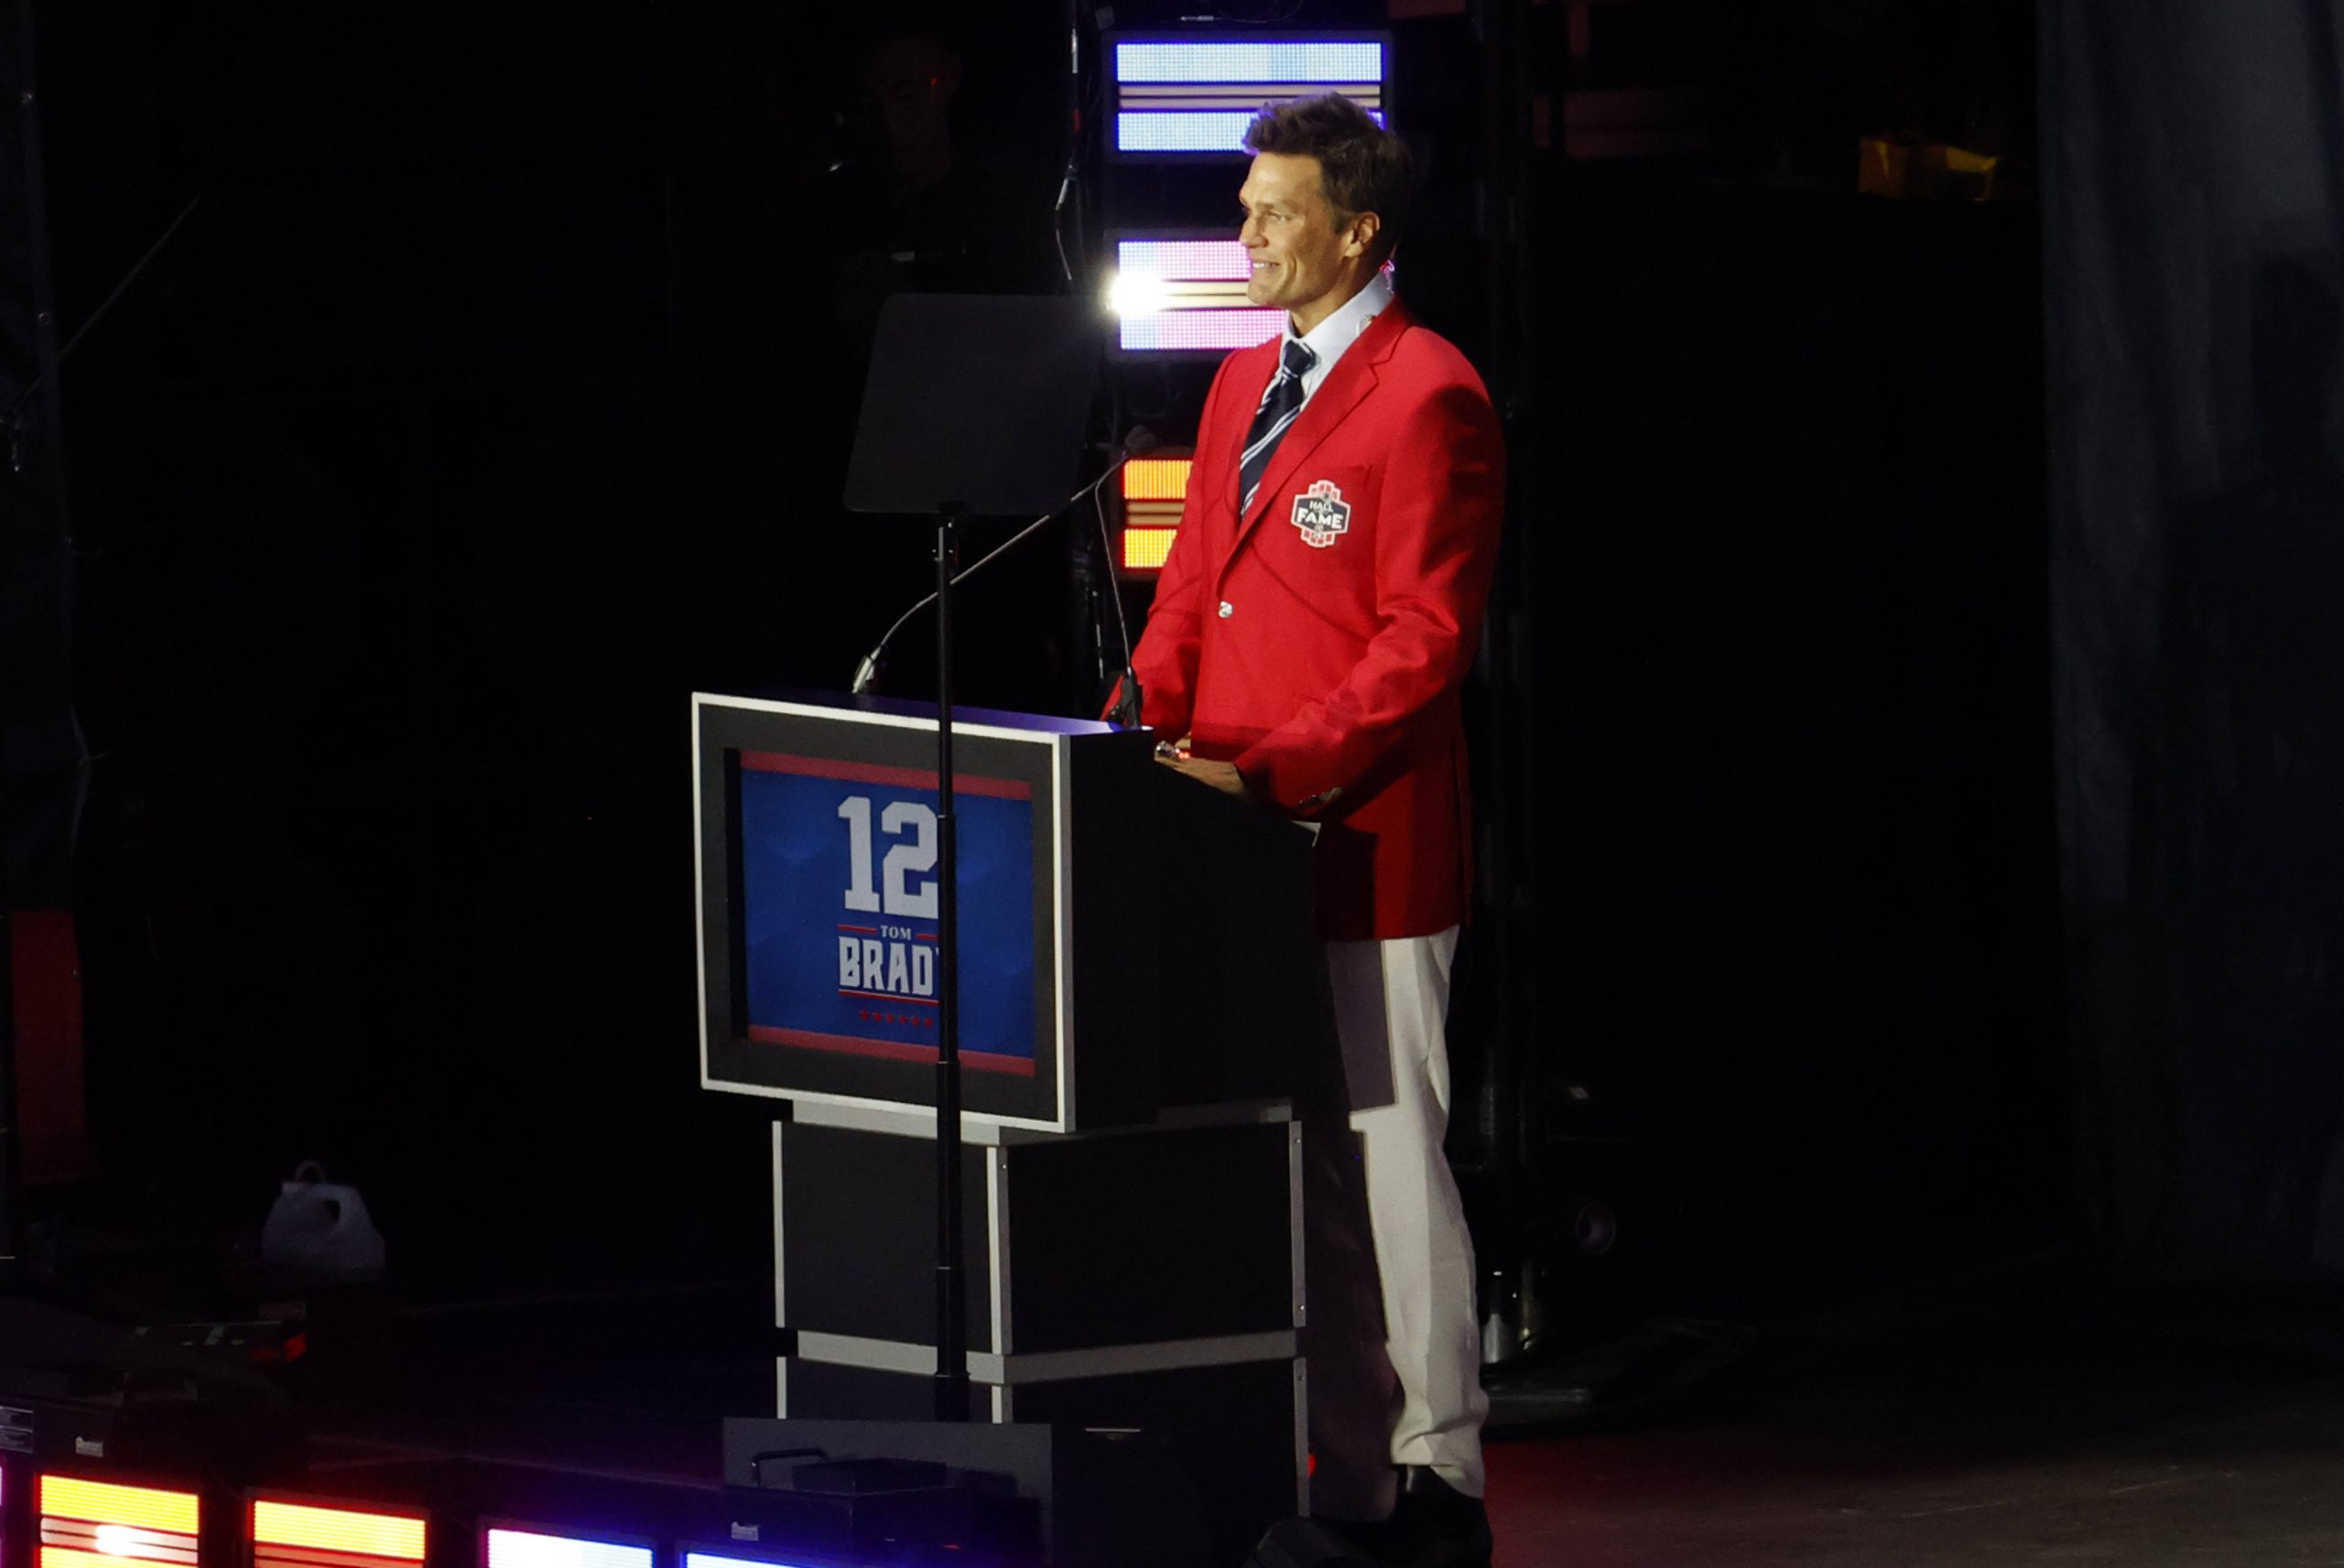 FootballR - NFL - Ein Mann steht lächelnd an einem Podium und trägt einen leuchtend roten Blazer und weiße Hosen. Auf dem Podium sind die Nummer 12 und das Wort „BRADY“ zu sehen. Im schwach beleuchteten Hintergrund mit bunten vertikalen Lichtern ist klar, dass er die Patriots-Legende Tom Brady geehrt wird. Diese Beschreibung wurde automatisch generiert.